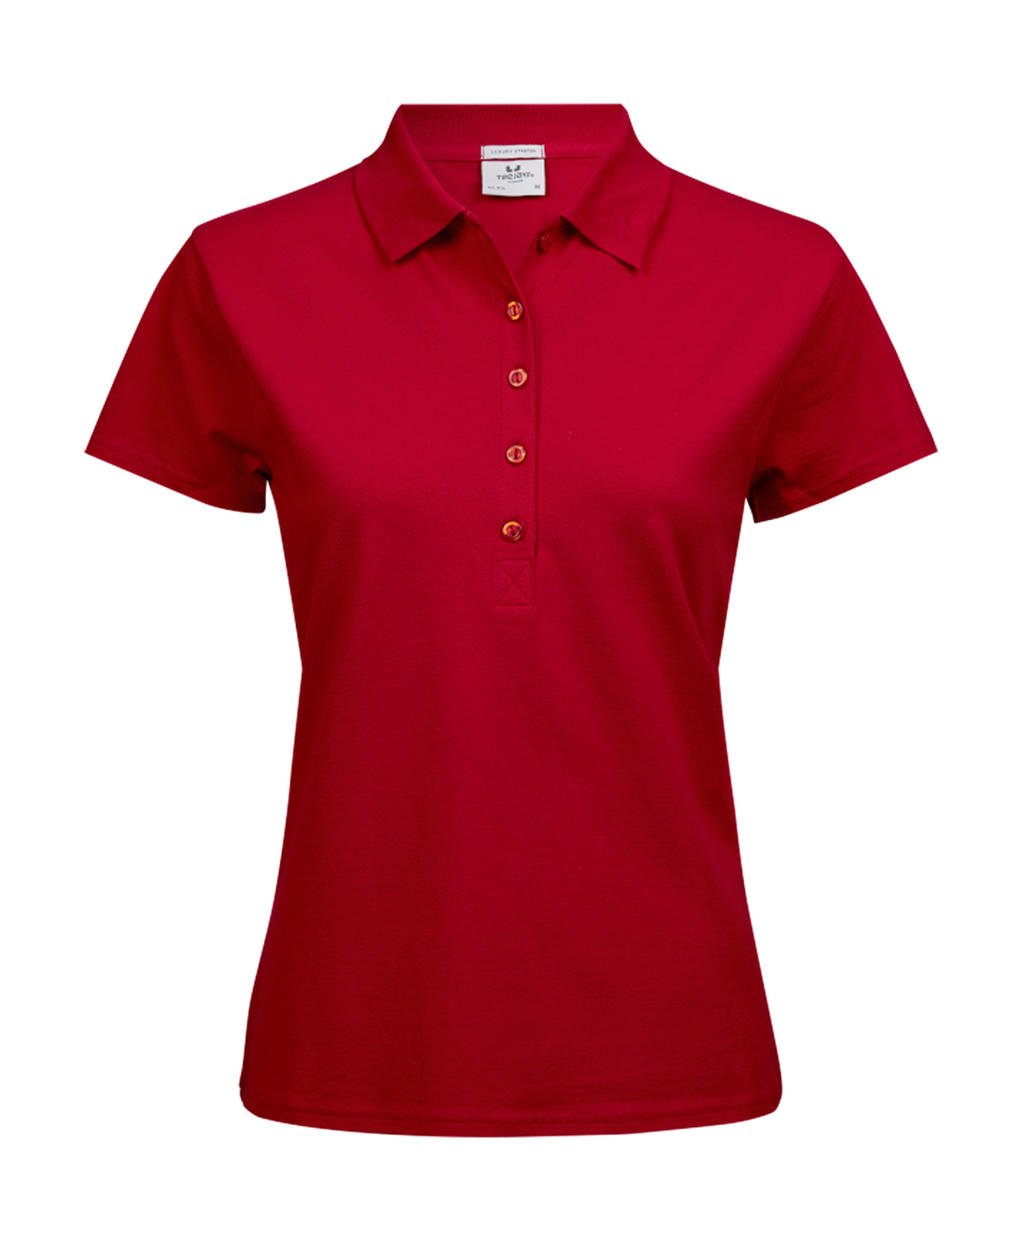 Polokošile dámská Tee Jays Luxury Stretch - červená, XL